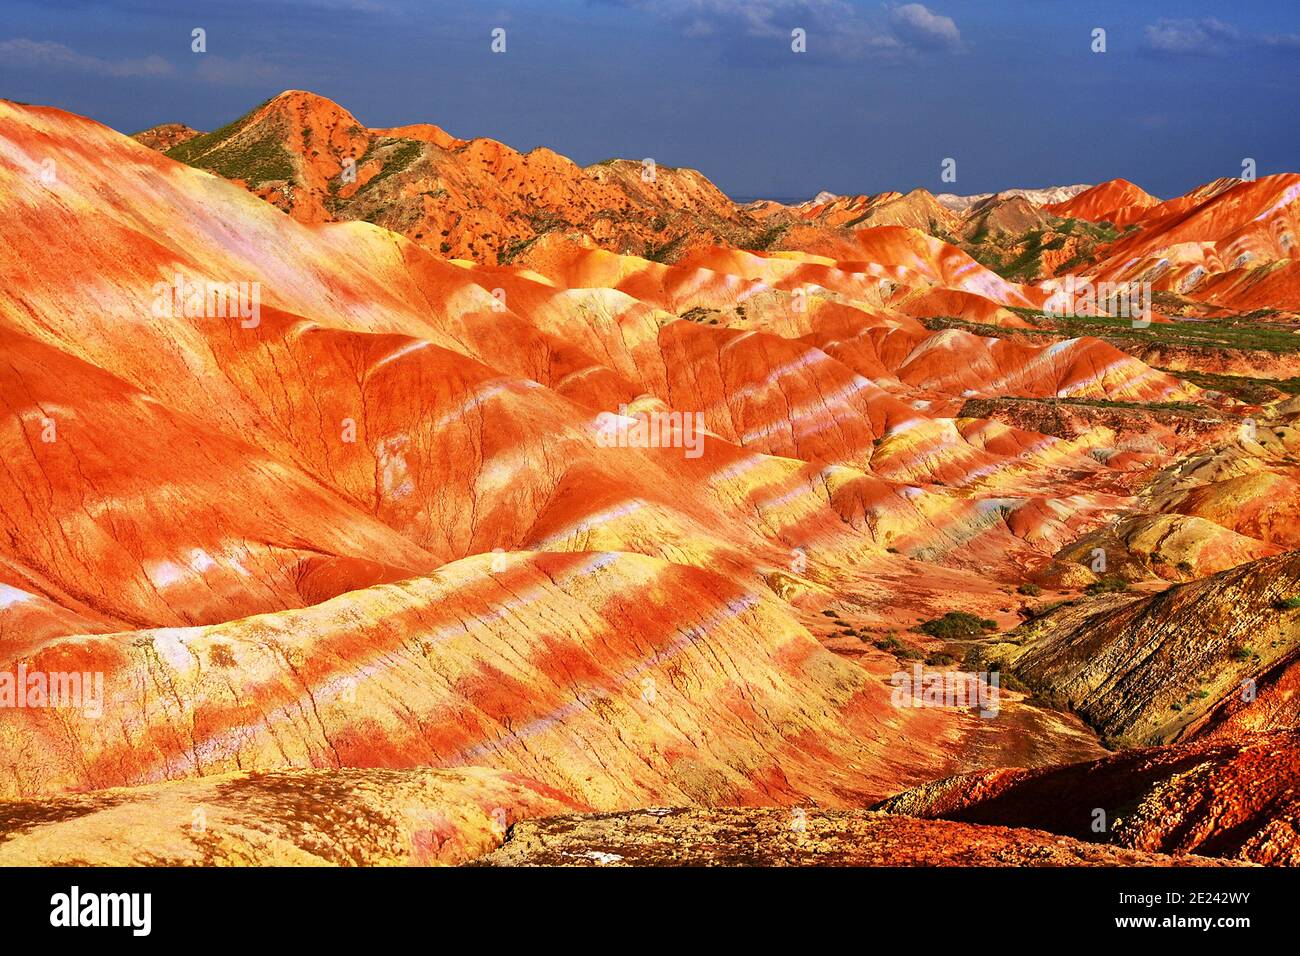 Die Regenbogenberge von China innerhalb des Zhangye Danxia landform Geological Park sind ein geologisches Wunder der Welt. Stockfoto